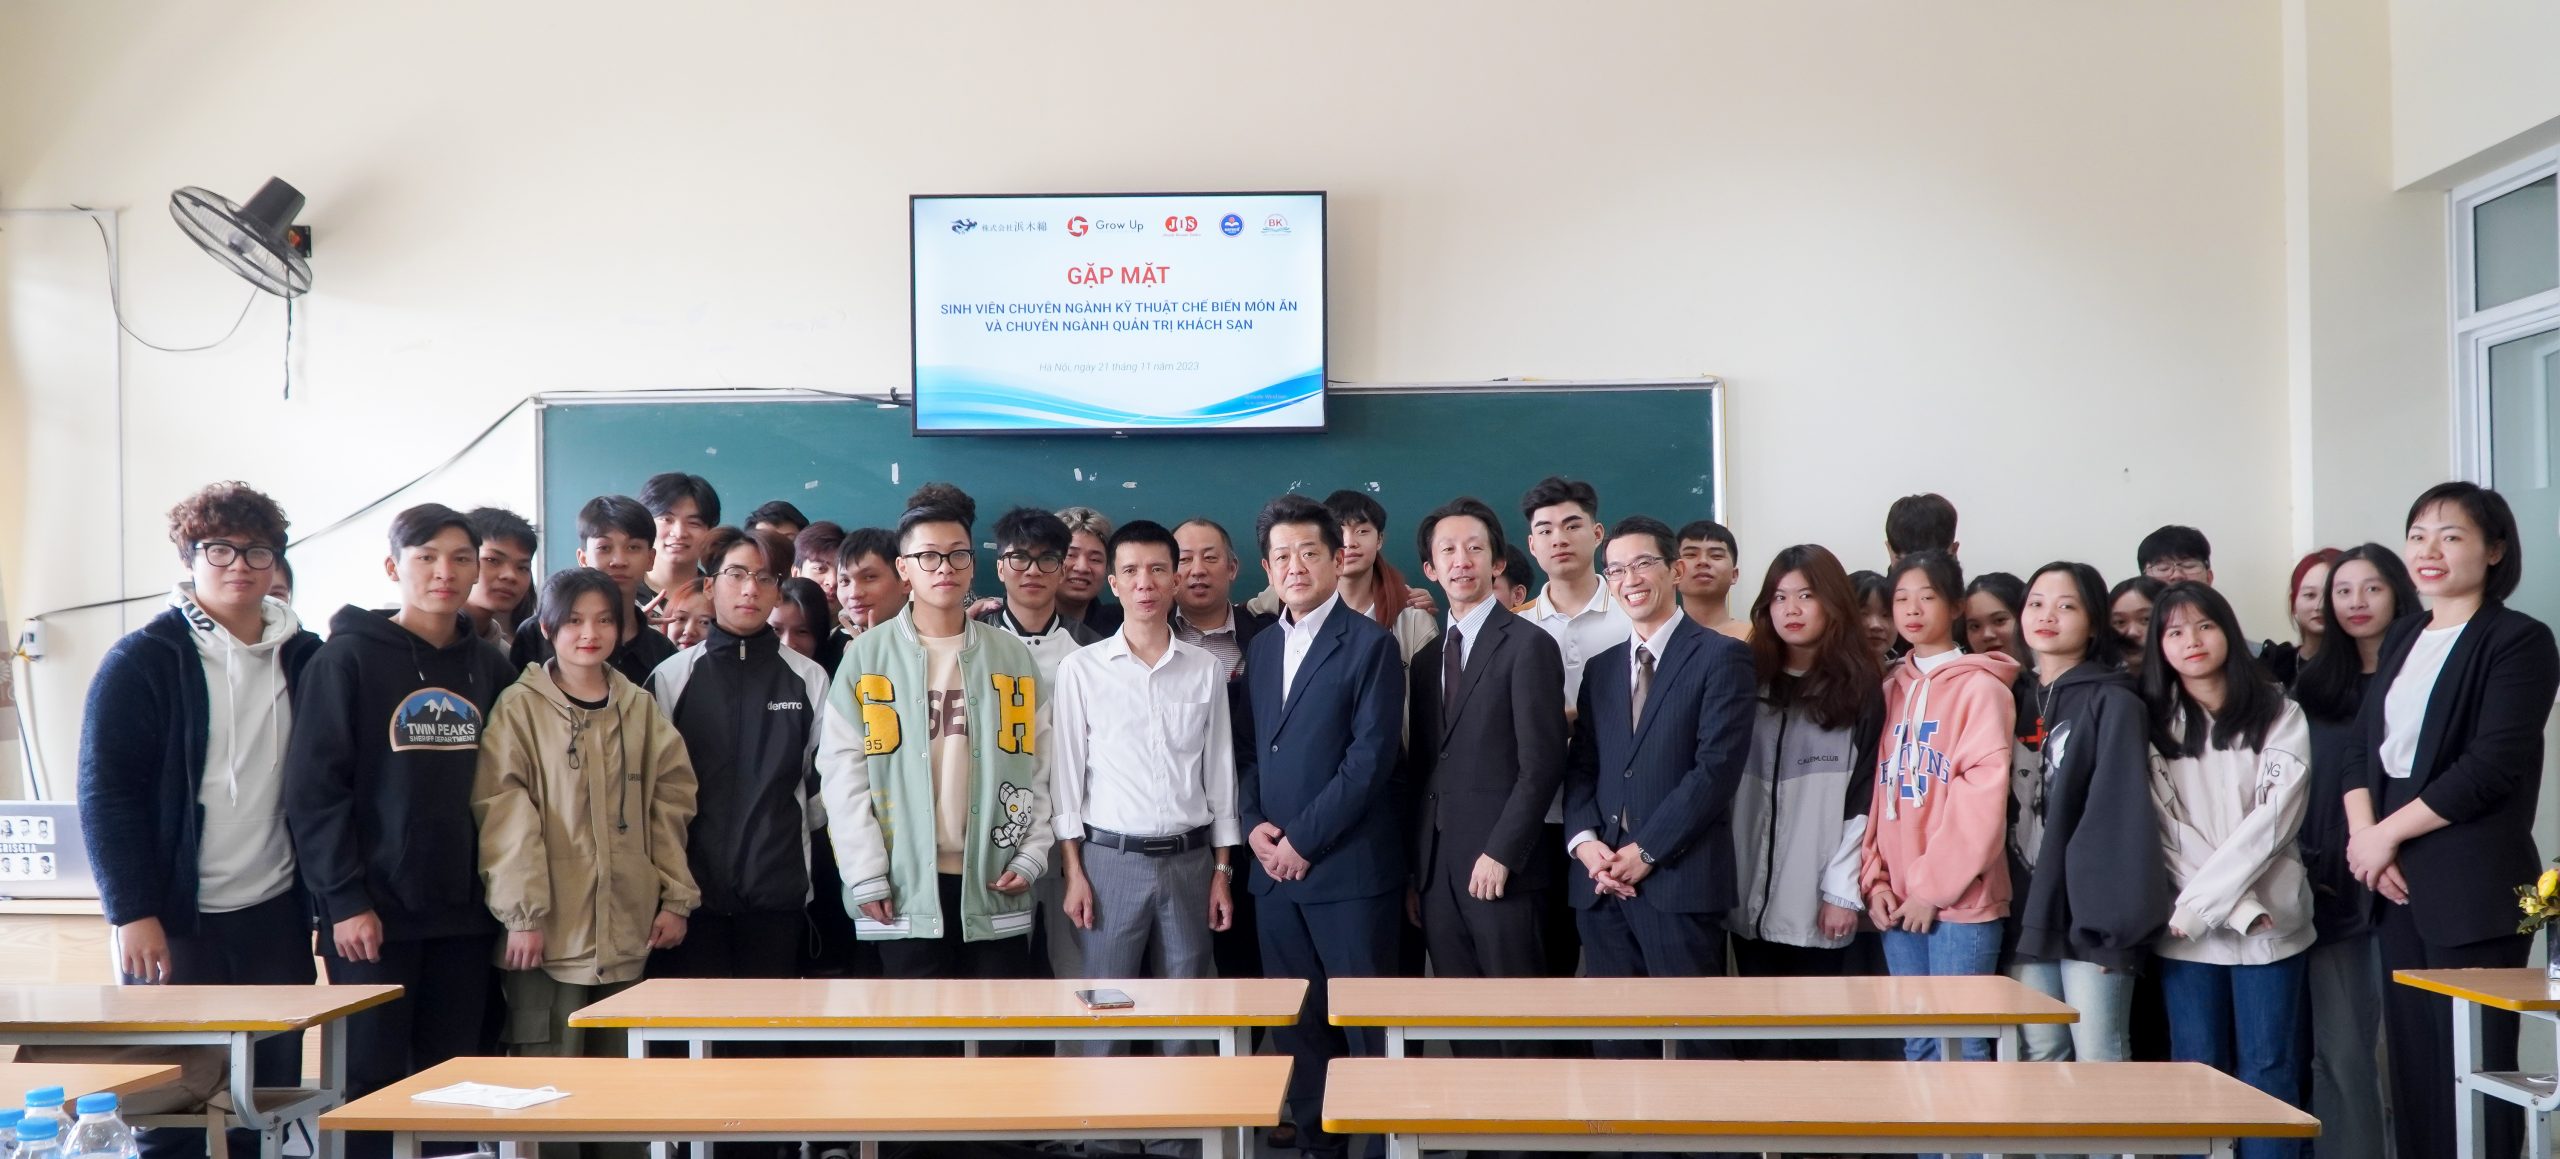 Sinh viên khoa Du lịch - Lữ hành gặp gỡ doanh nghiệp nhà hàng khách sạn tại Nhật Bản